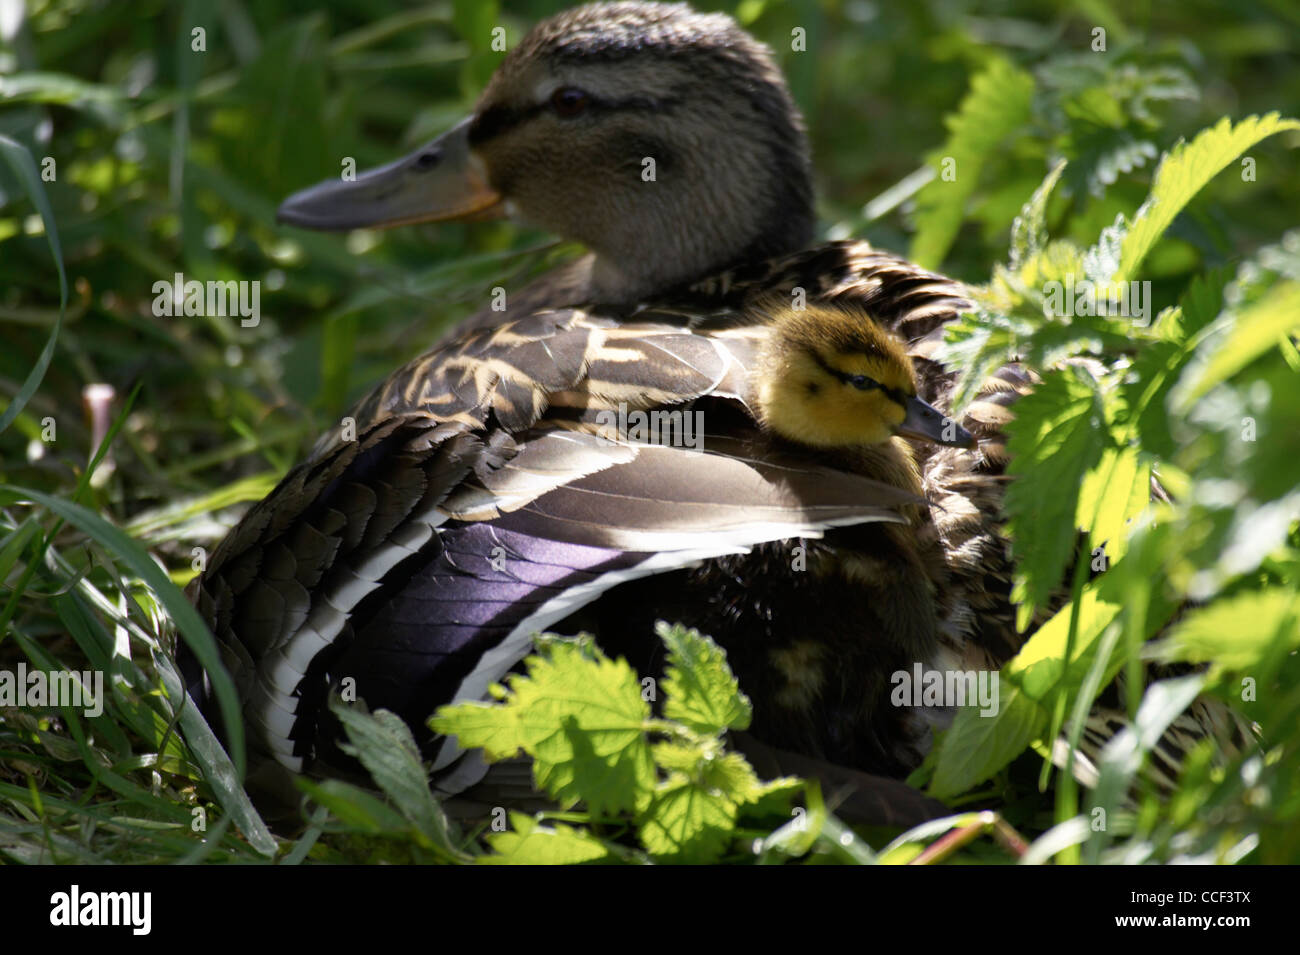 Femmina, Mallard duck, Anas platyrhynchos, con anatroccolo sbirciando da sotto le piume sulla schiena. Foto Stock